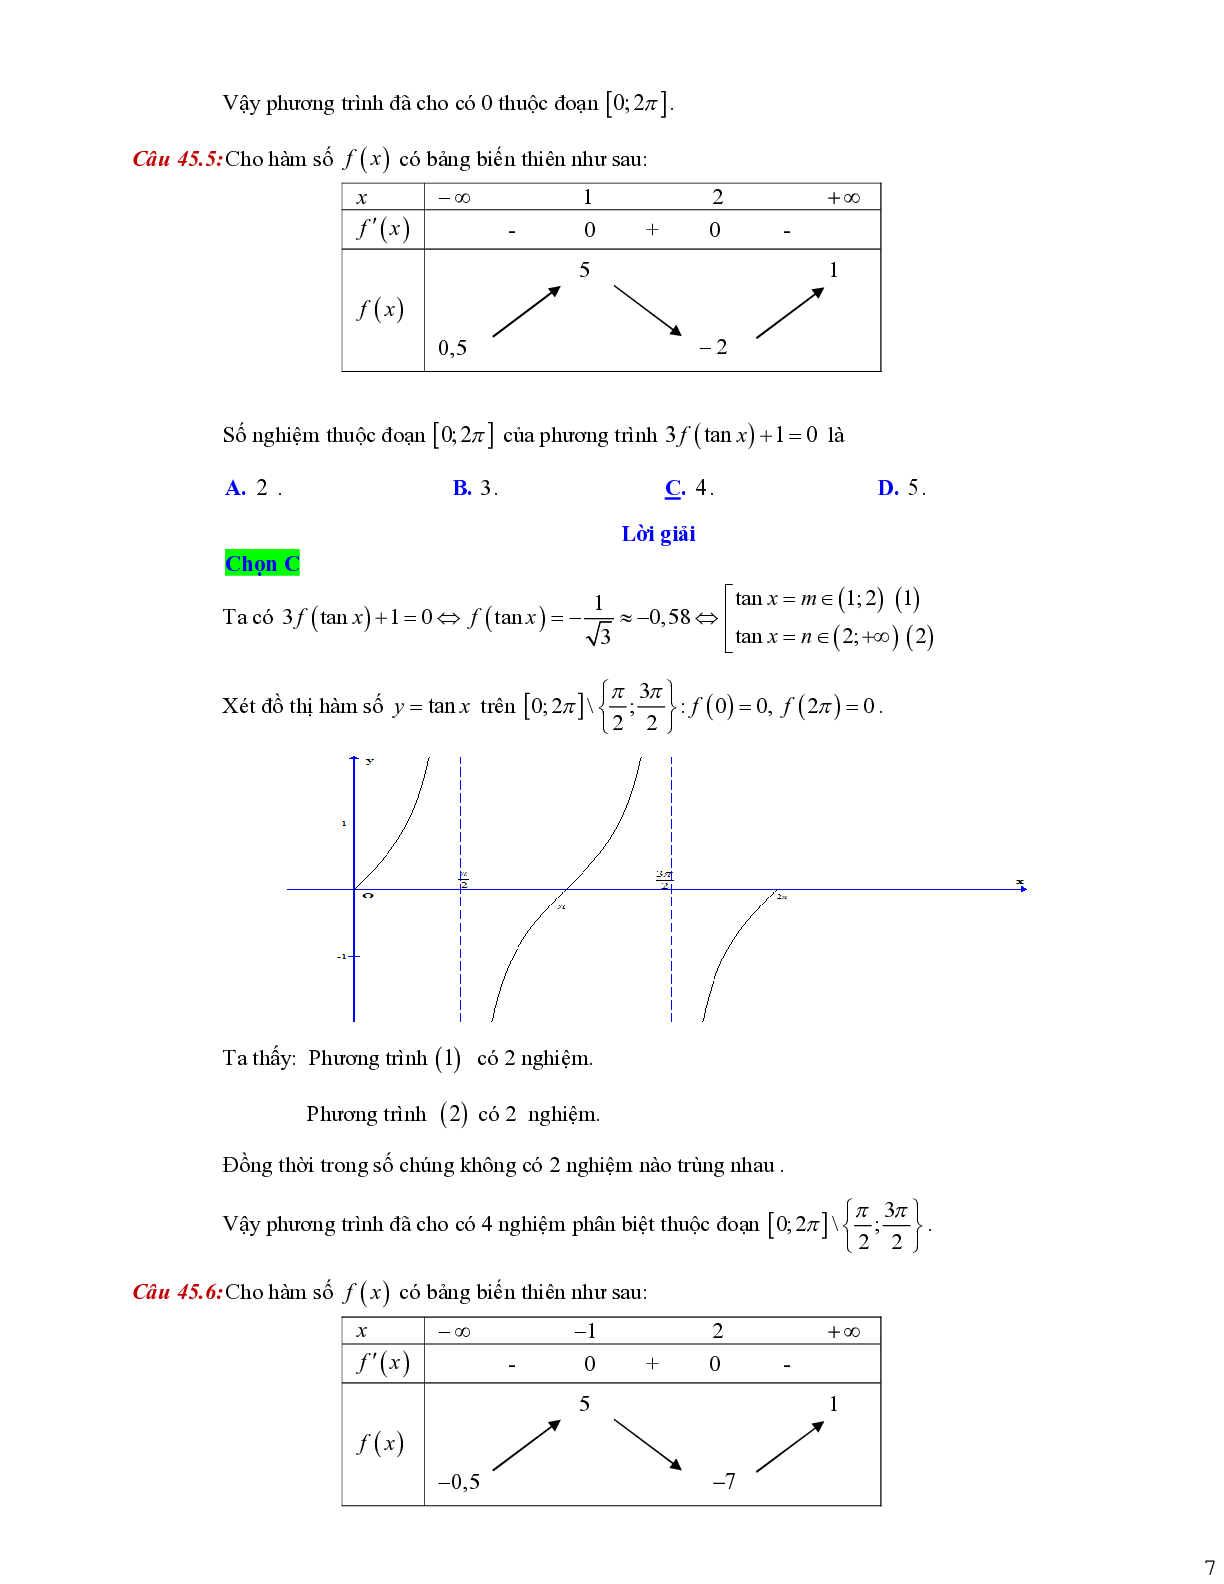 Dạng toán liên quan tới giao điểm của hai đồ thị (trang 7)